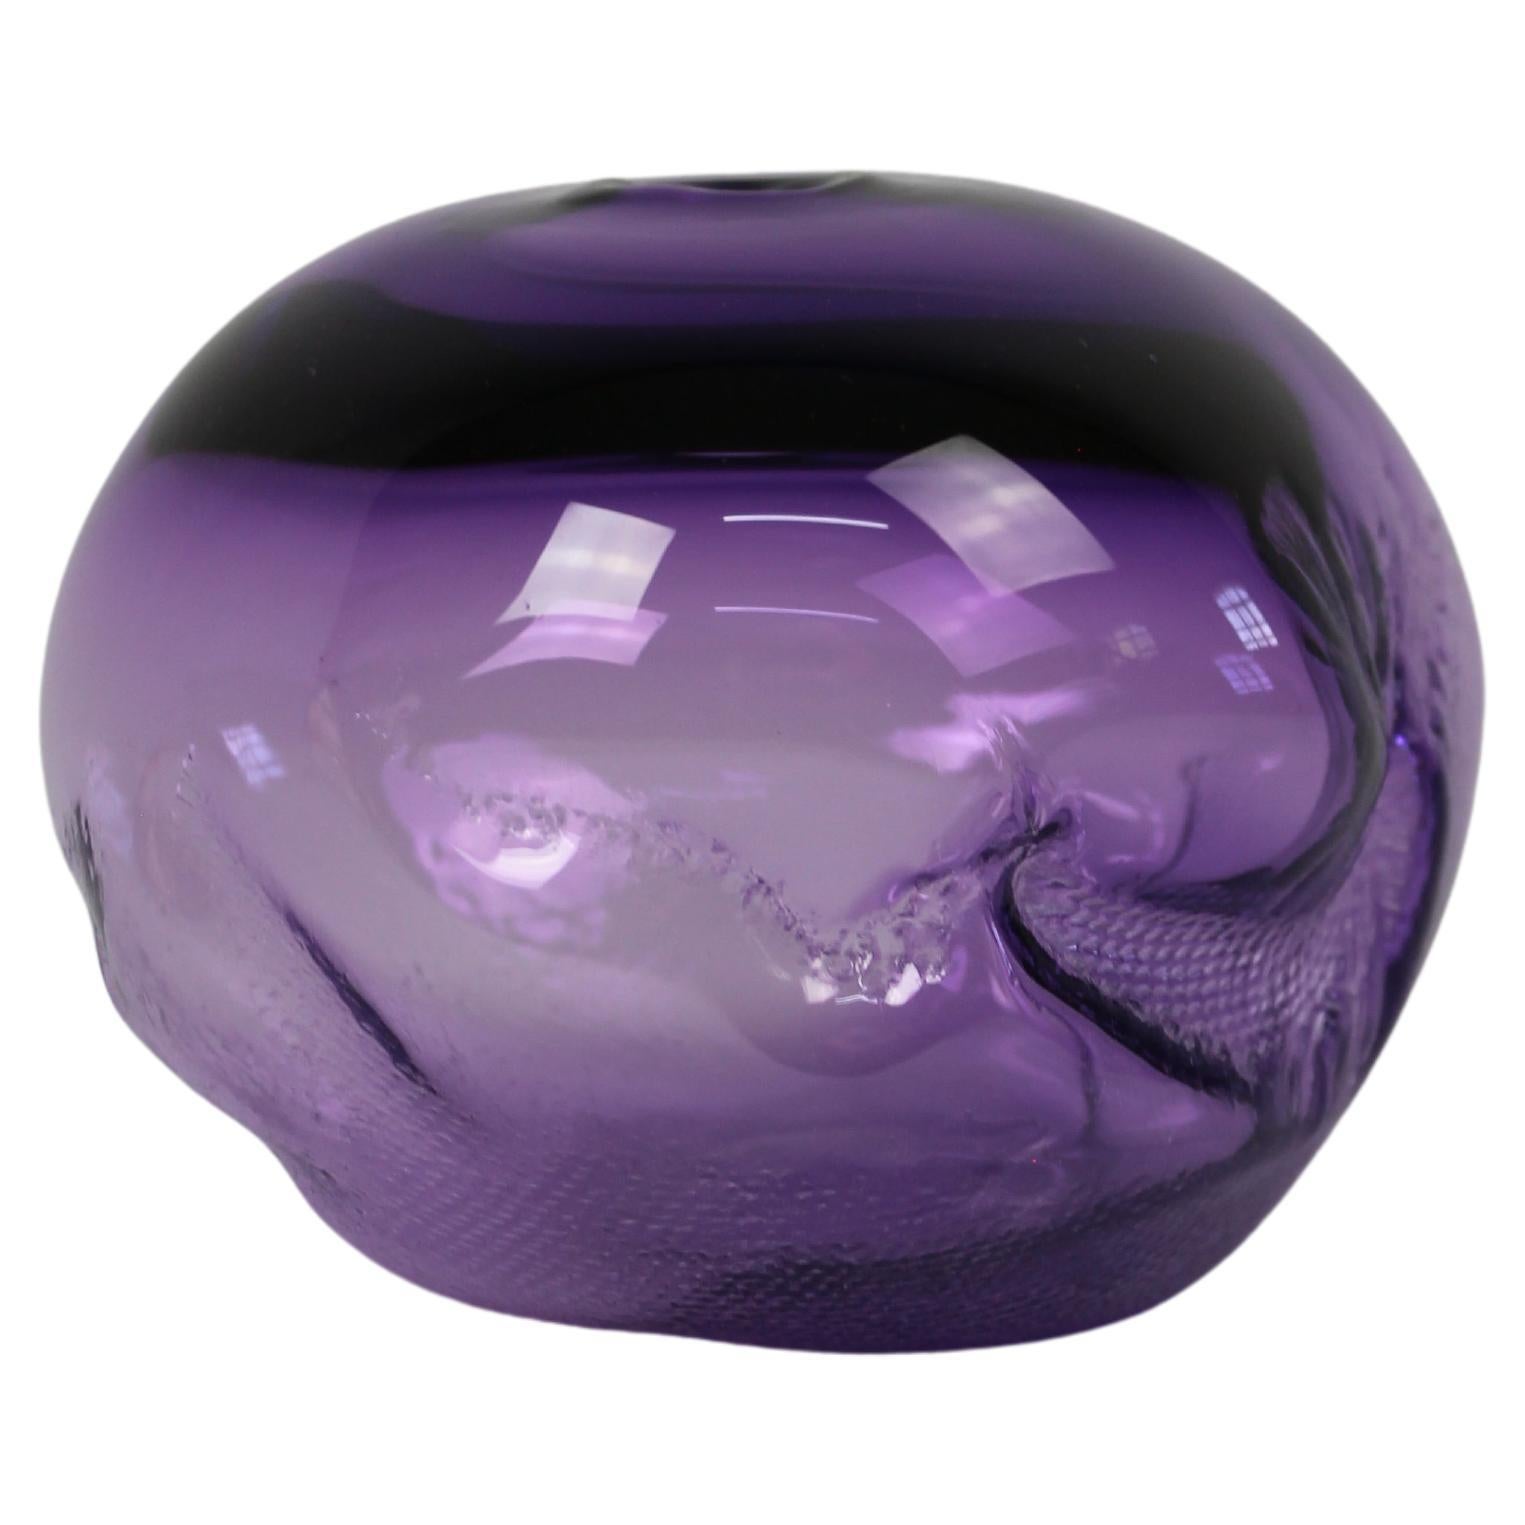 Formes 1/2 Ltr, bleu violet, objet en verre fait à la main par Vogel Studio